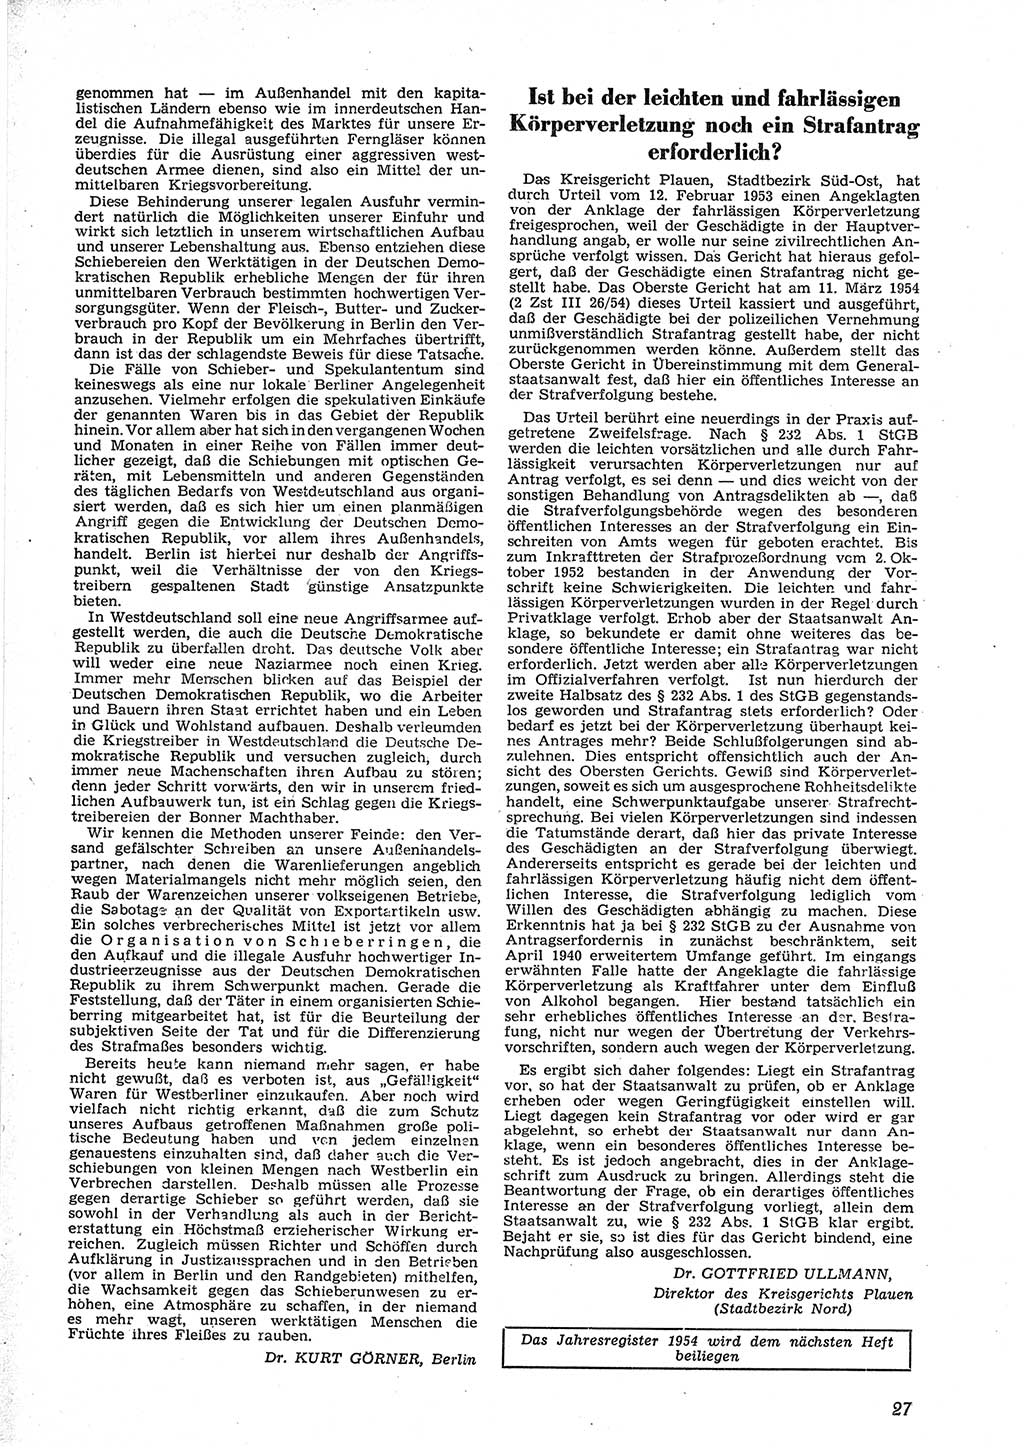 Neue Justiz (NJ), Zeitschrift für Recht und Rechtswissenschaft [Deutsche Demokratische Republik (DDR)], 9. Jahrgang 1955, Seite 27 (NJ DDR 1955, S. 27)